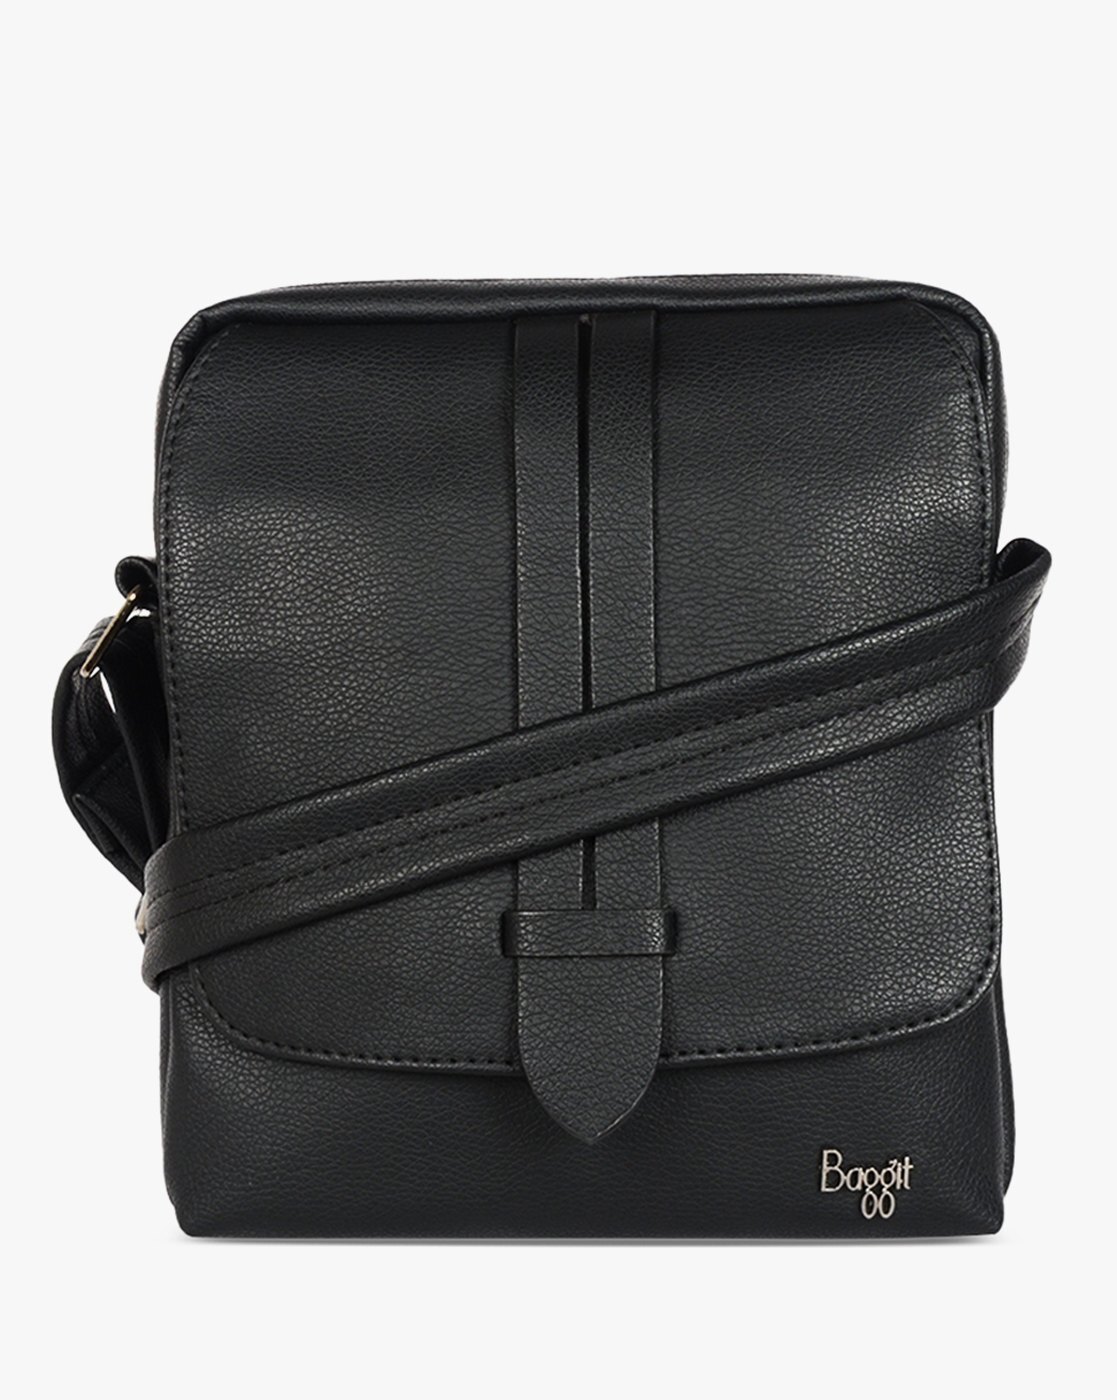 Baggit Wallets : Buy Baggit Search Black 2 Fold Wallet (S) Online | Nykaa  Fashion